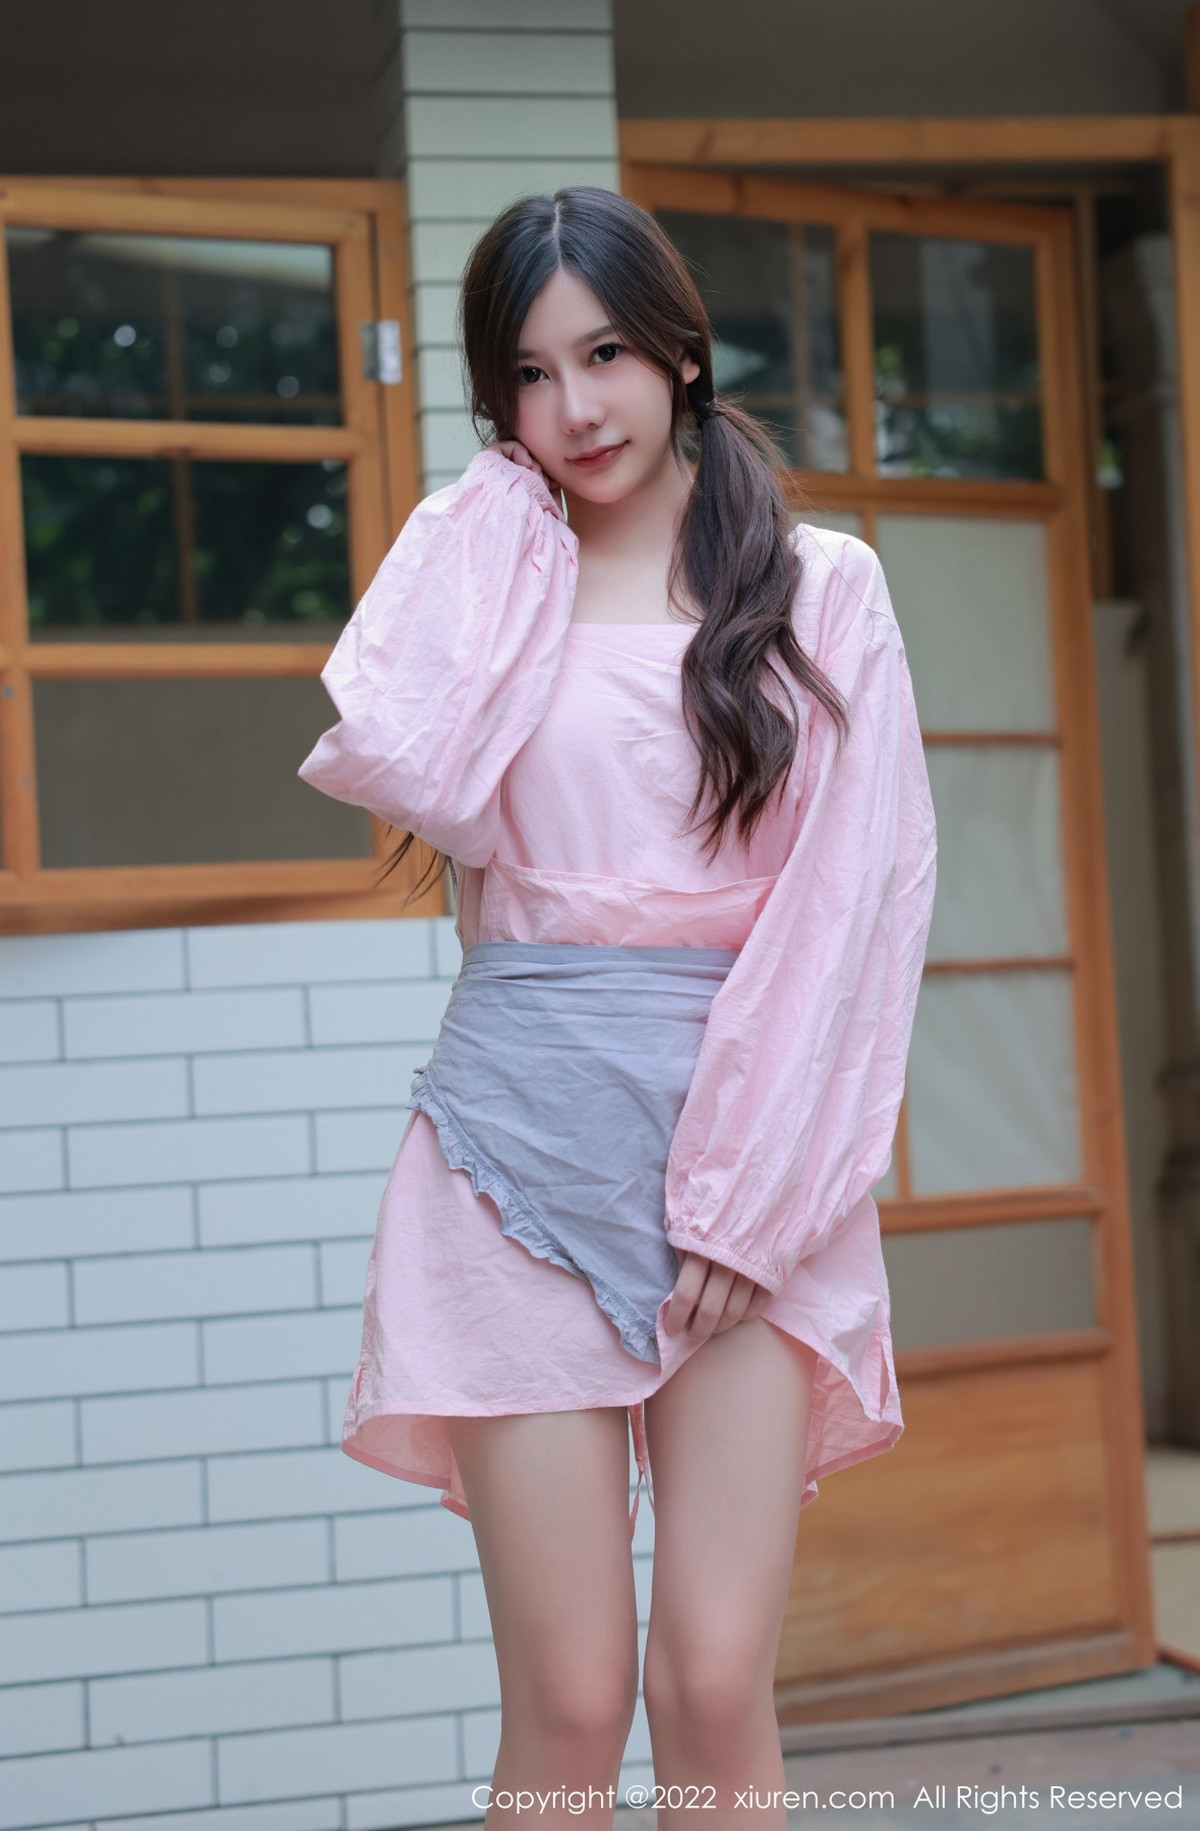 模特尹甜甜豆腐店拍摄粉色服饰秀完美身材露性感美腿迷人写真